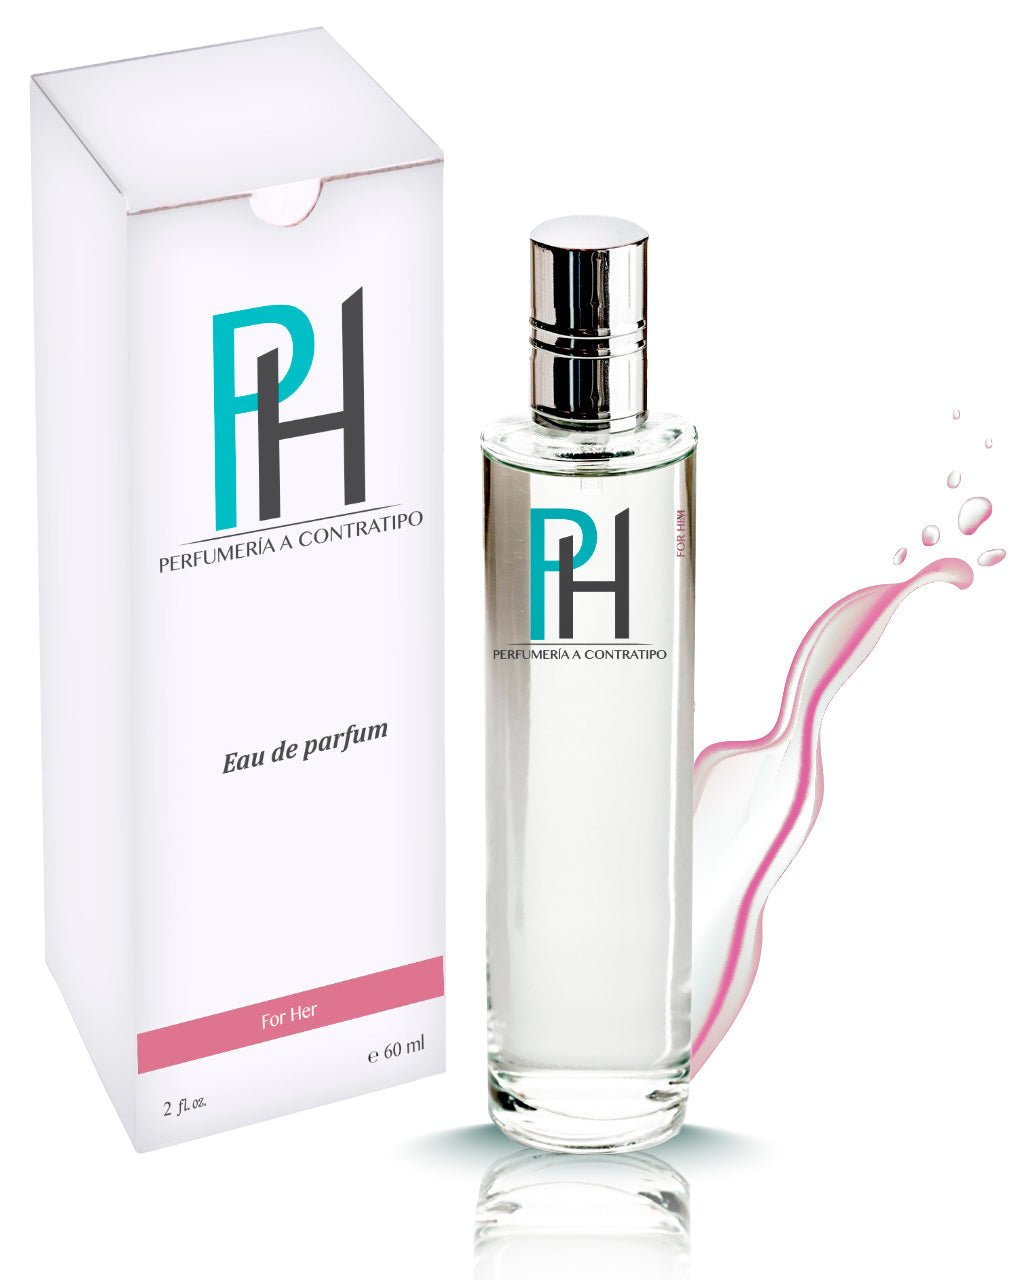 Perfume Burberry For Her De 60 ml - PH Perfumería a Contratipo